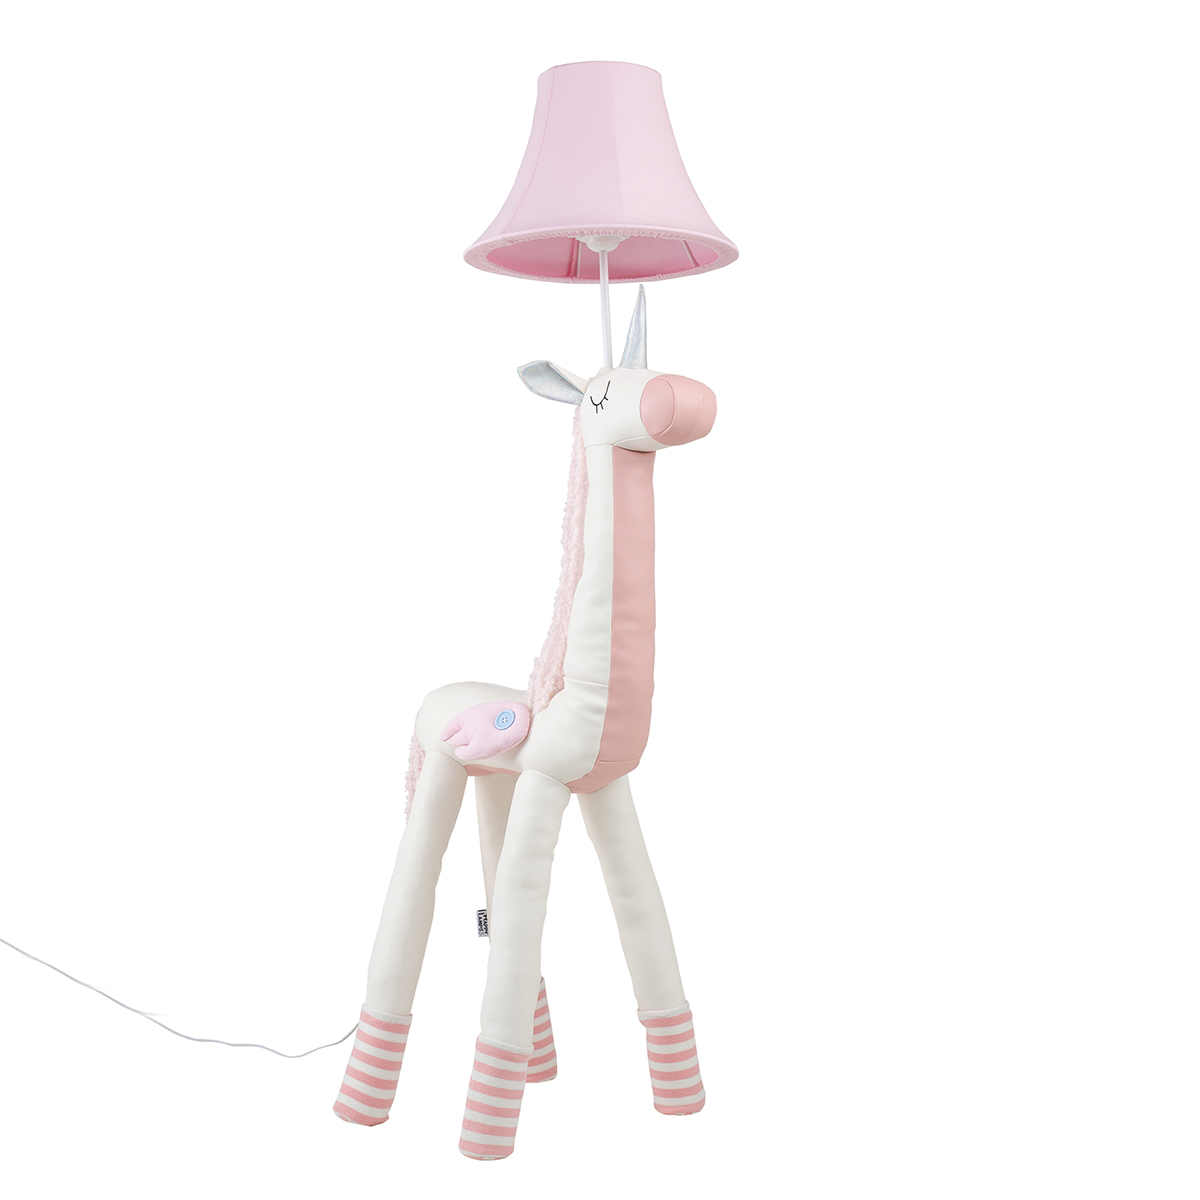 Happy Lamps Kinder vloerlamp eenhoorn roze - Bonita